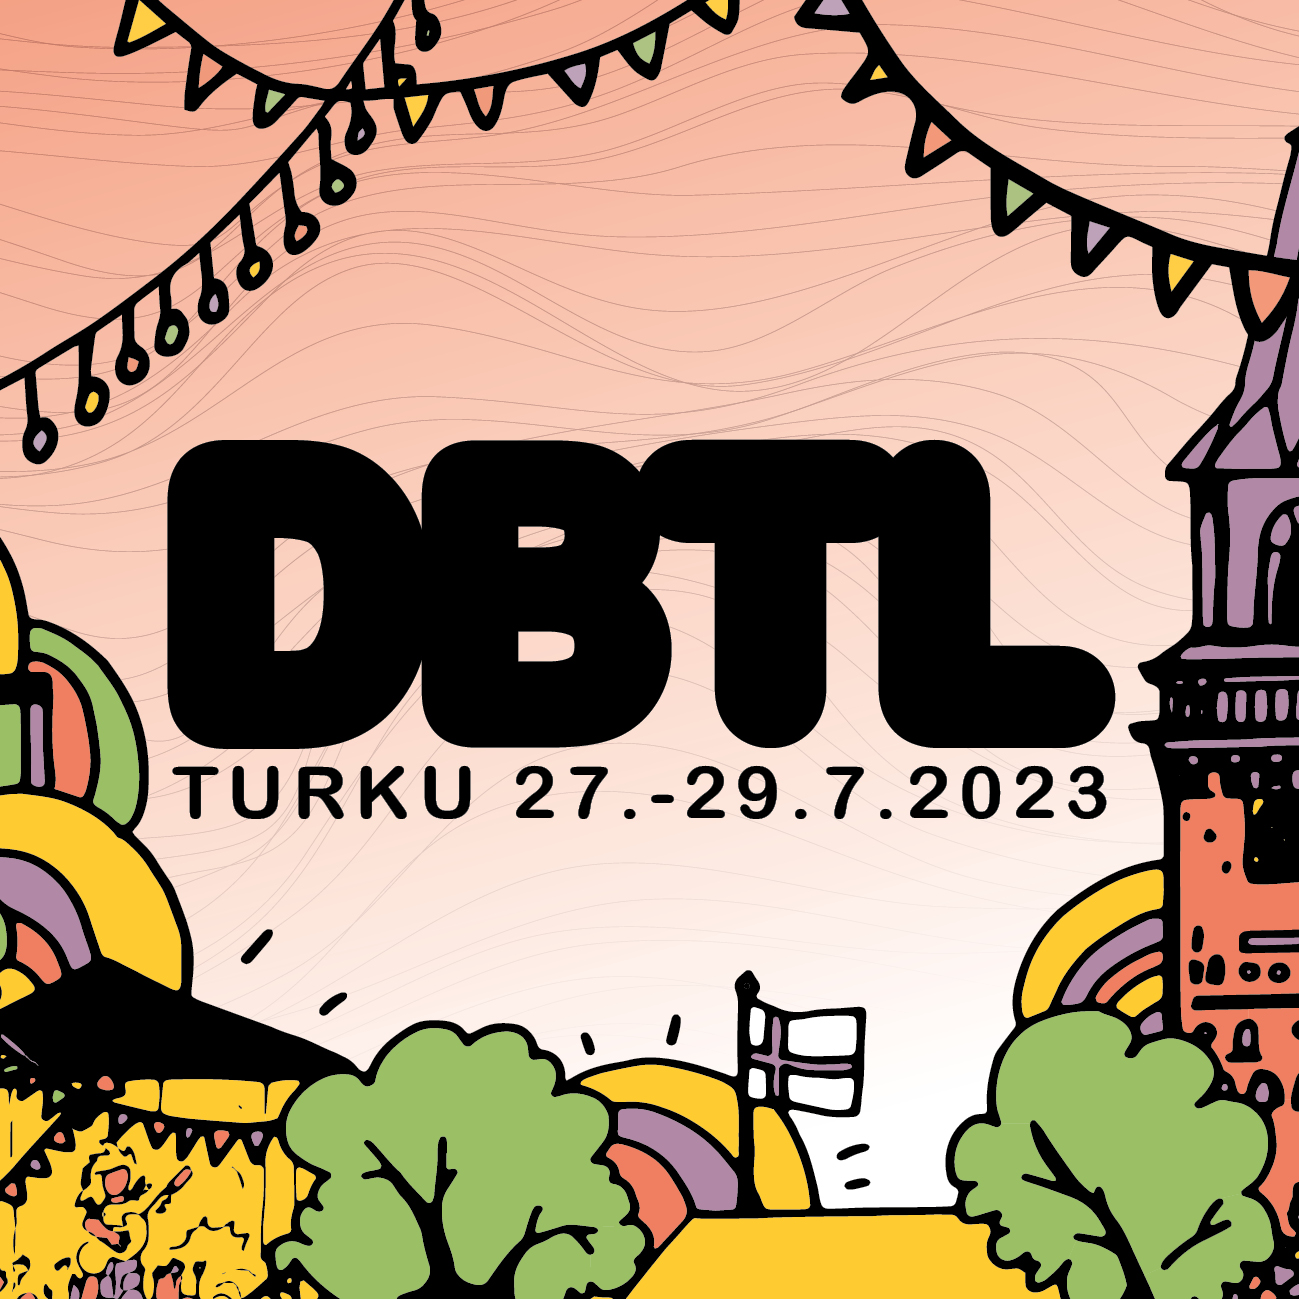 DBTL-kaupunkifestivaalit juhlitaan Turussa heinäkuun lopulla - luvassa upeita uudistuksia!